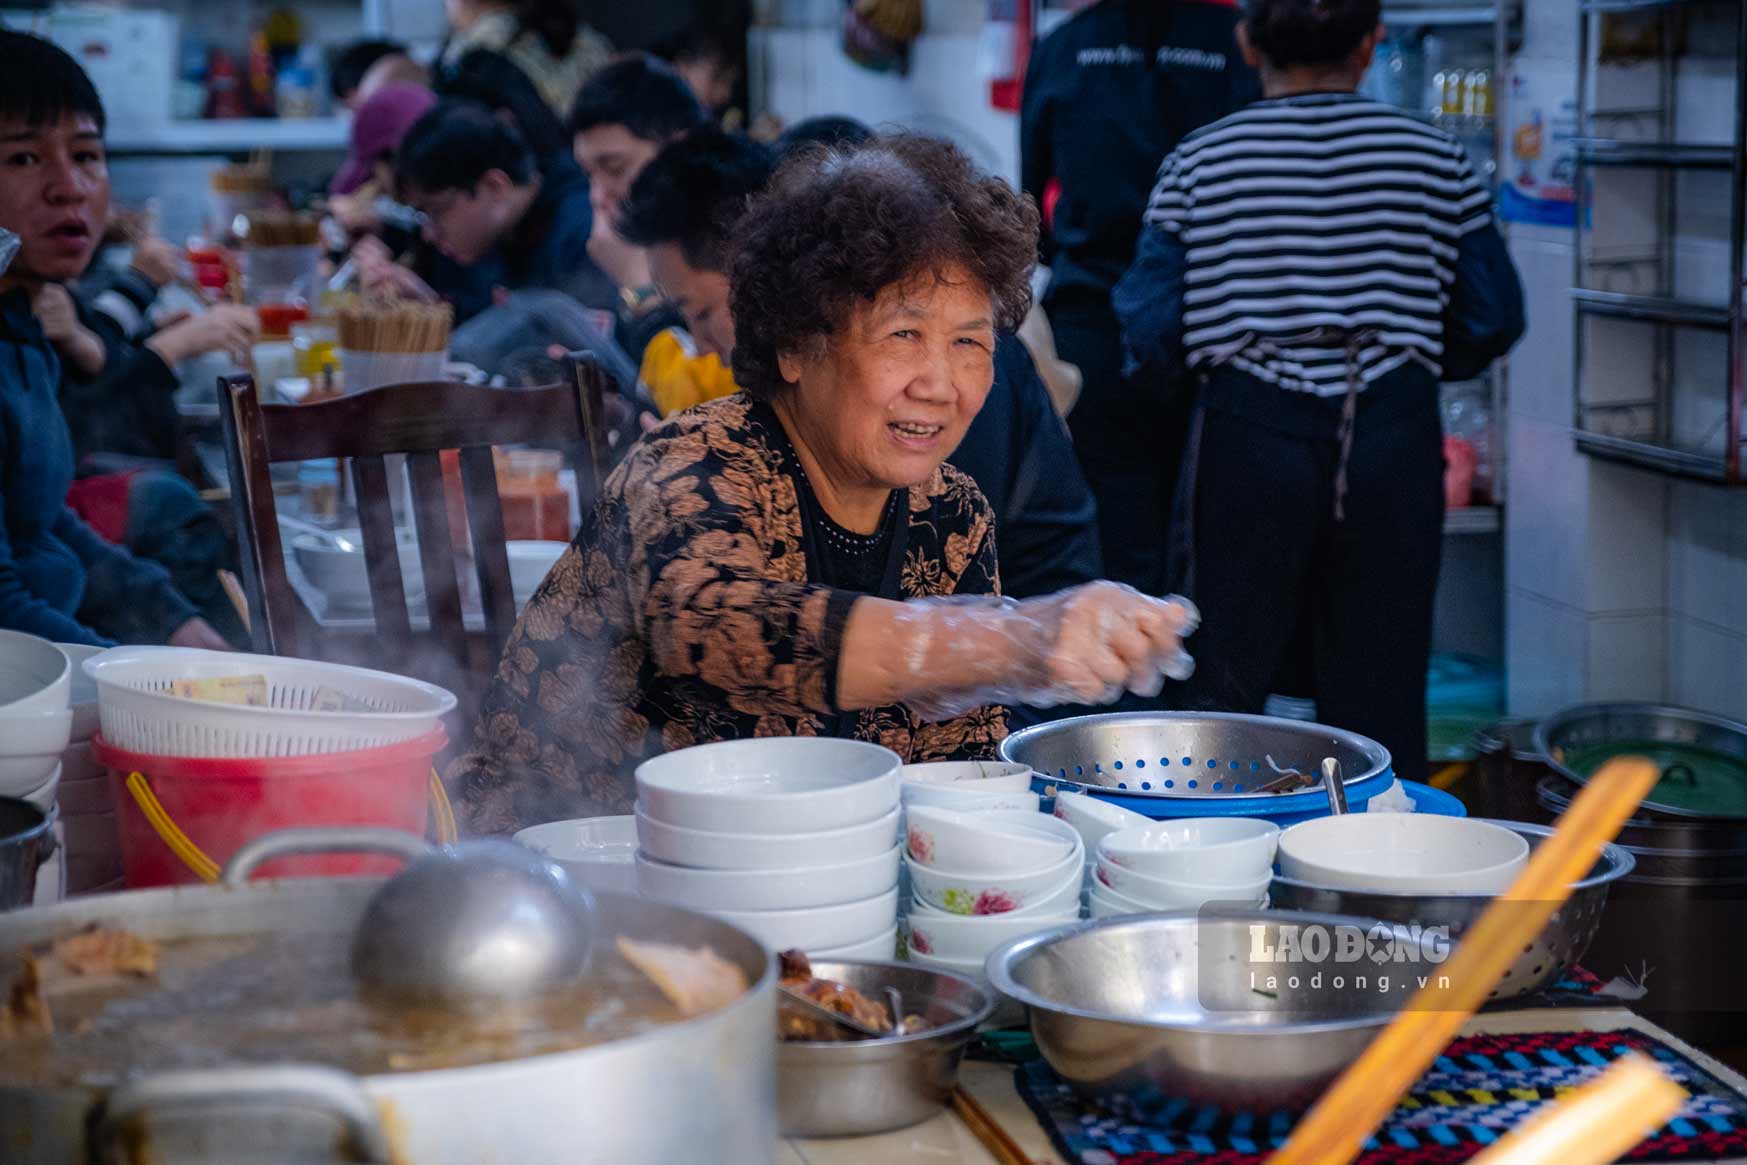 Nhiều gia đình trẻ chọn ở lại Hà Nội dịp nghỉ lễ, trải nghiệm những quán ăn nổi tiếng mà chưa có dịp đến trước đó. Ảnh: Hồng Diệp